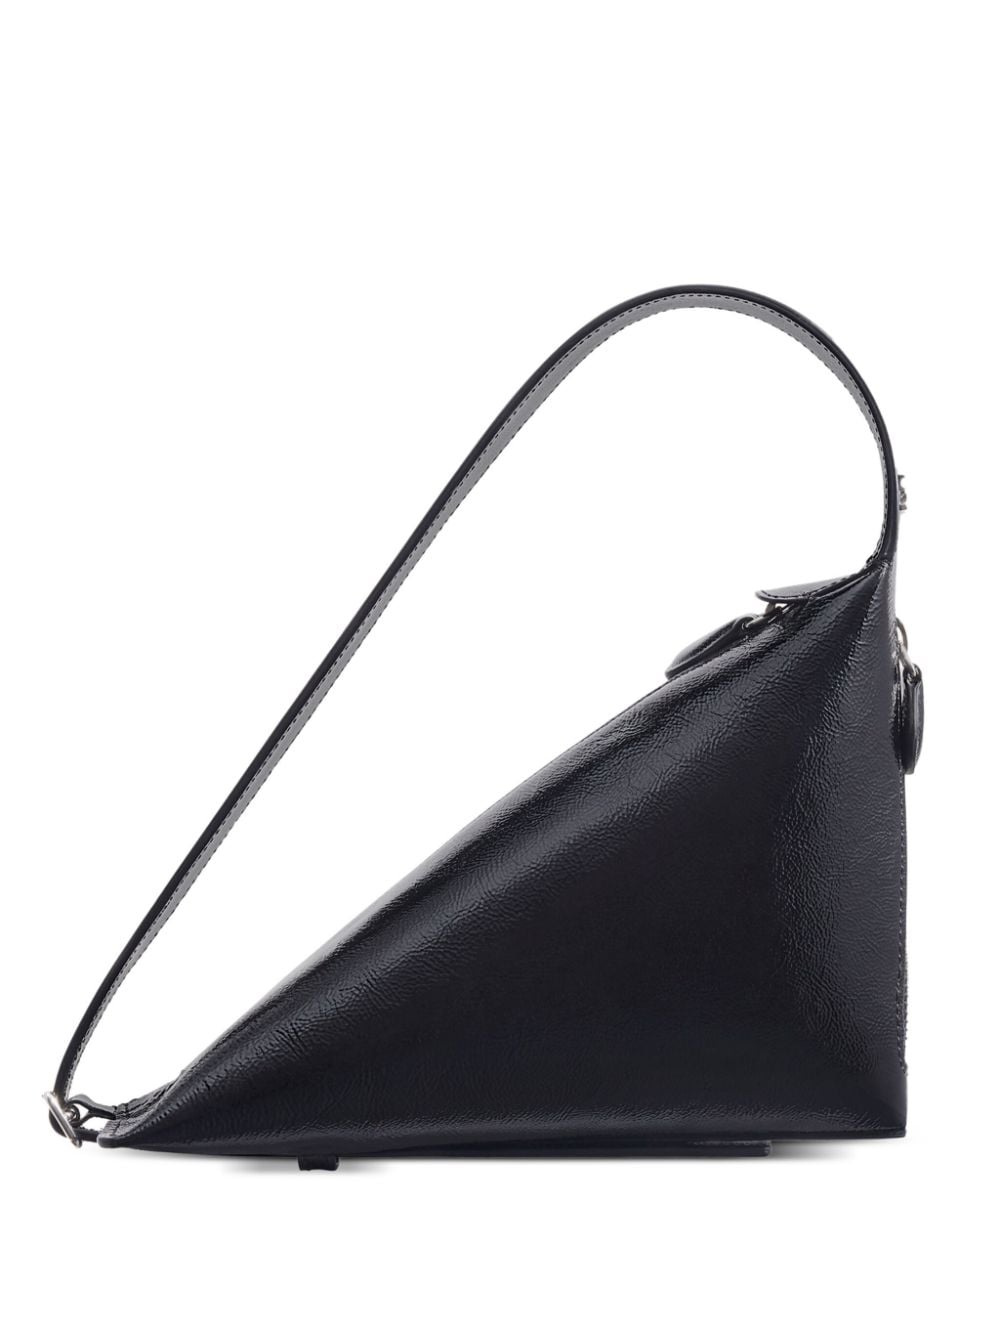 Courrèges One Naplack leather shoulder bag - Black